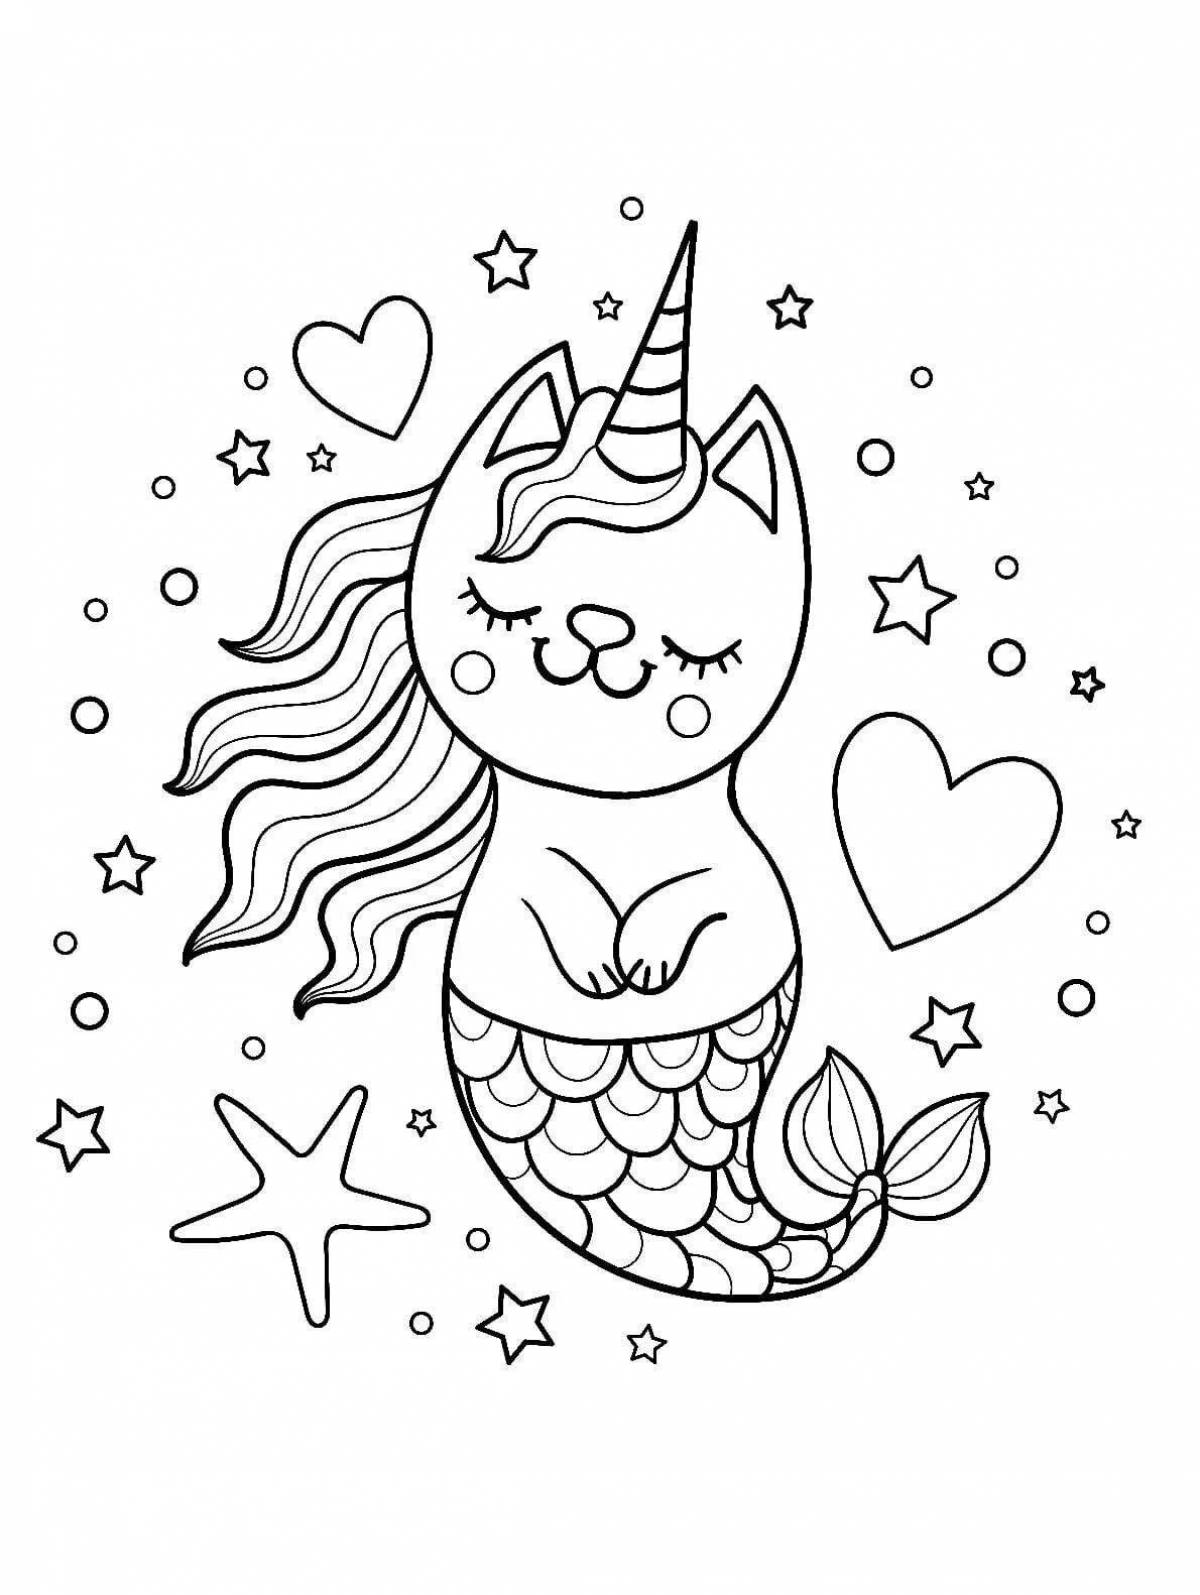 Fun coloring cat mermaid